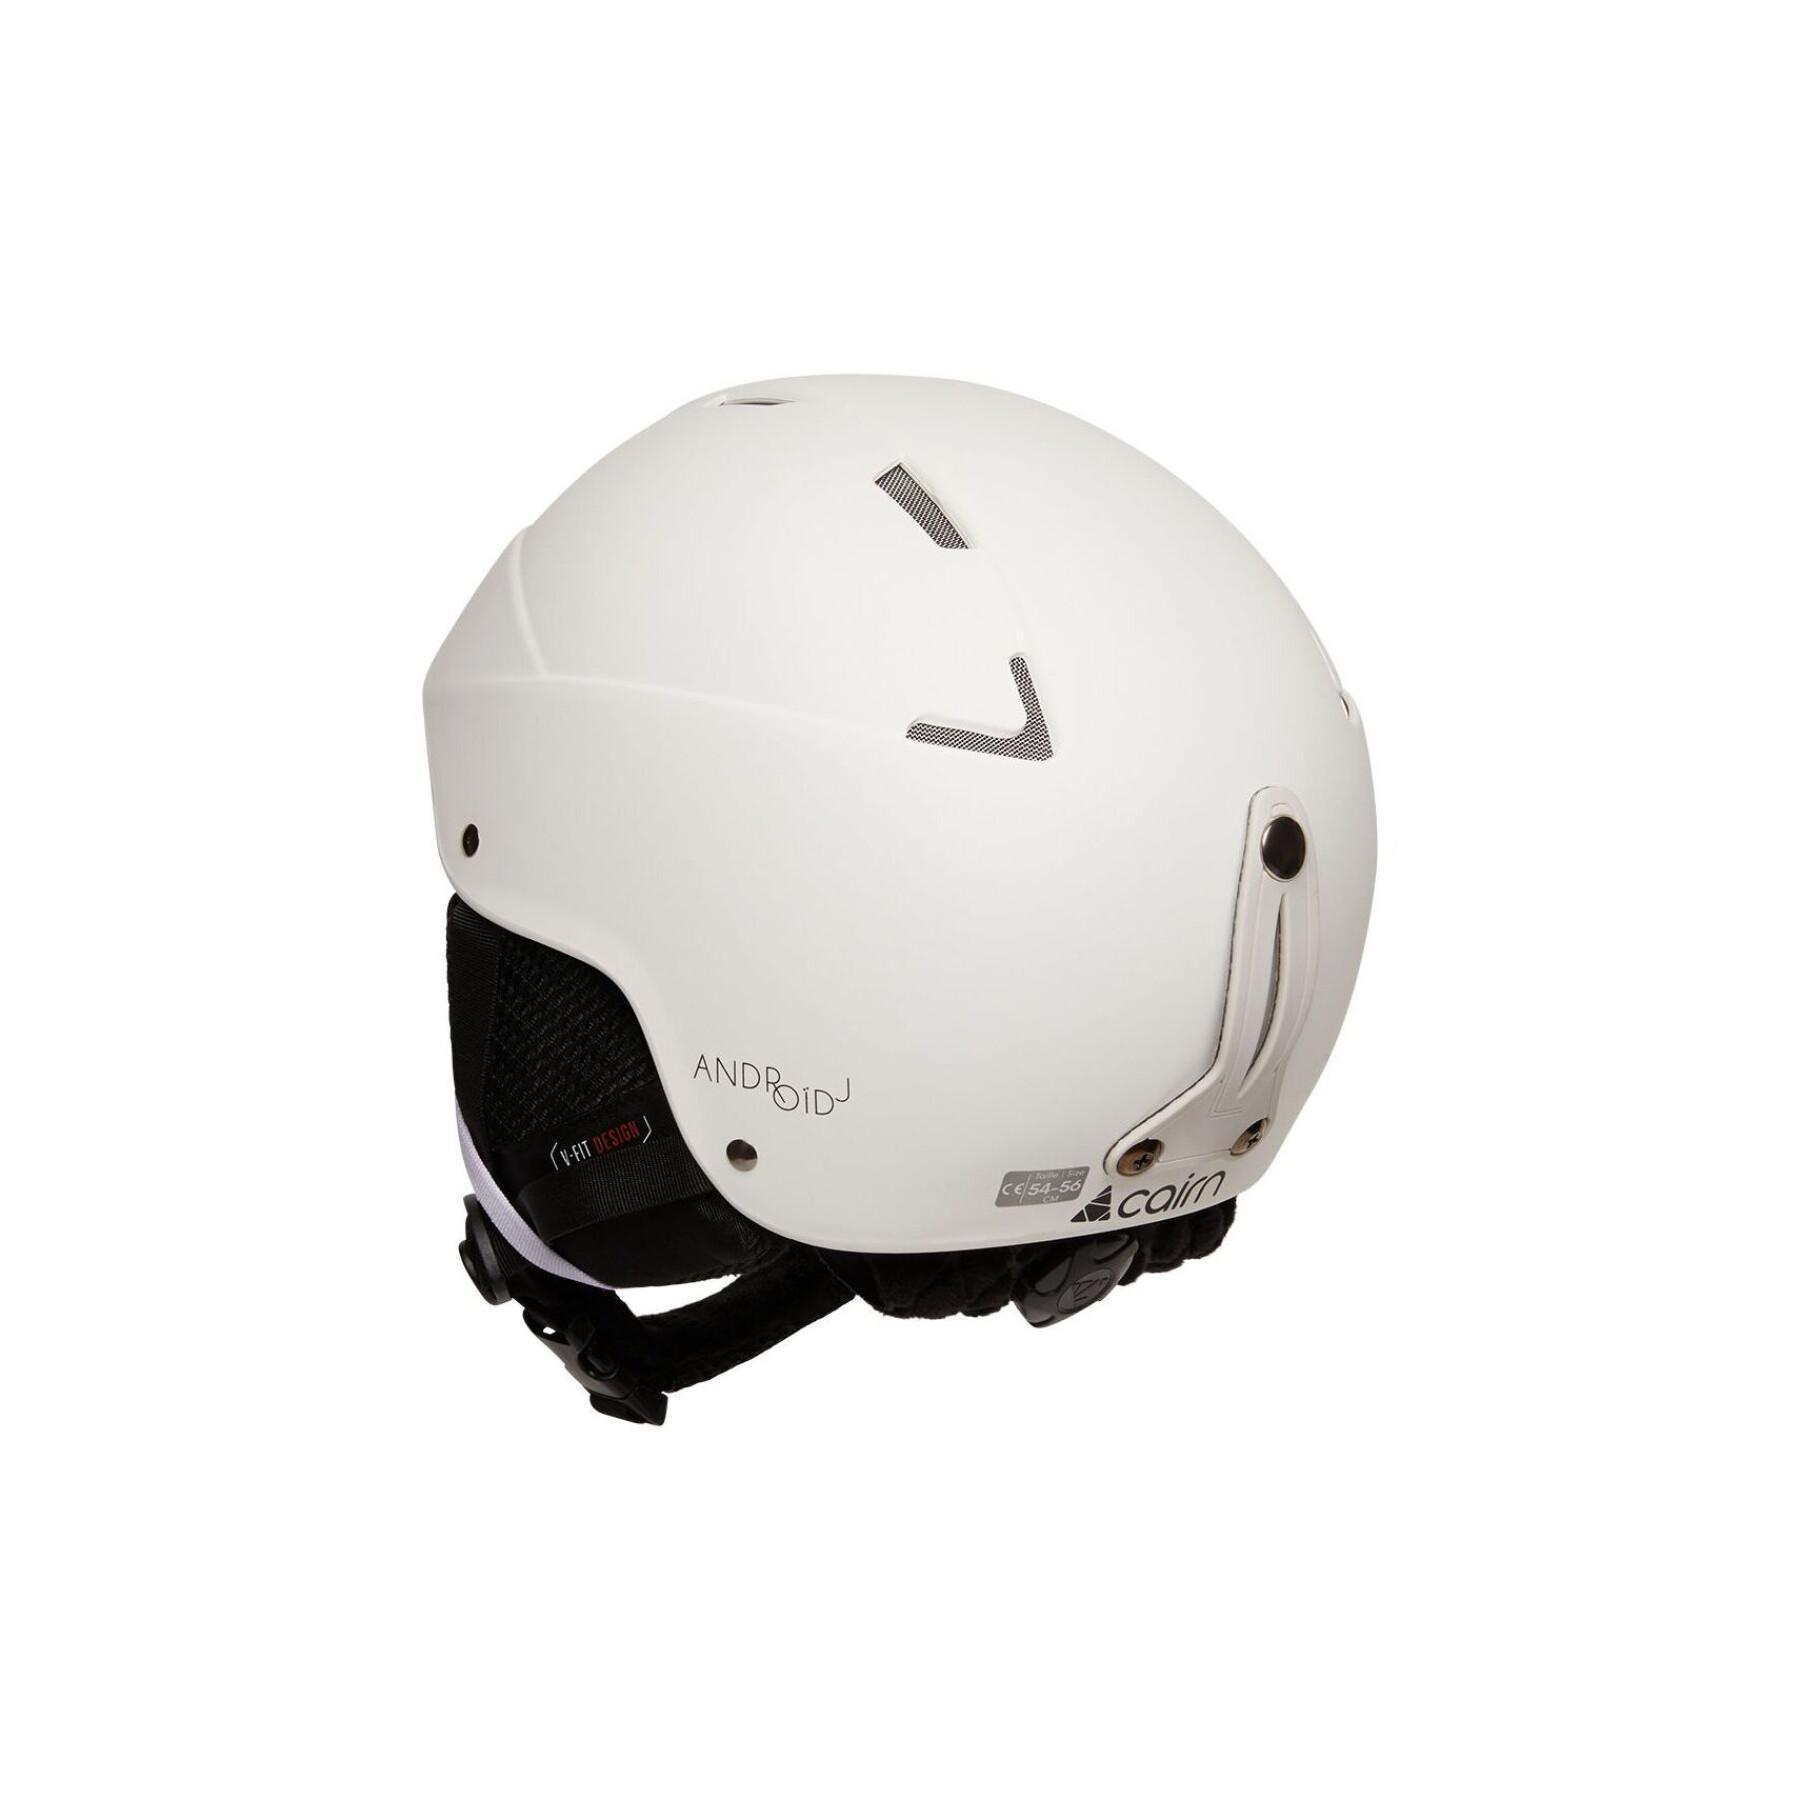 Kinder-Ski-Helm Cairn Android